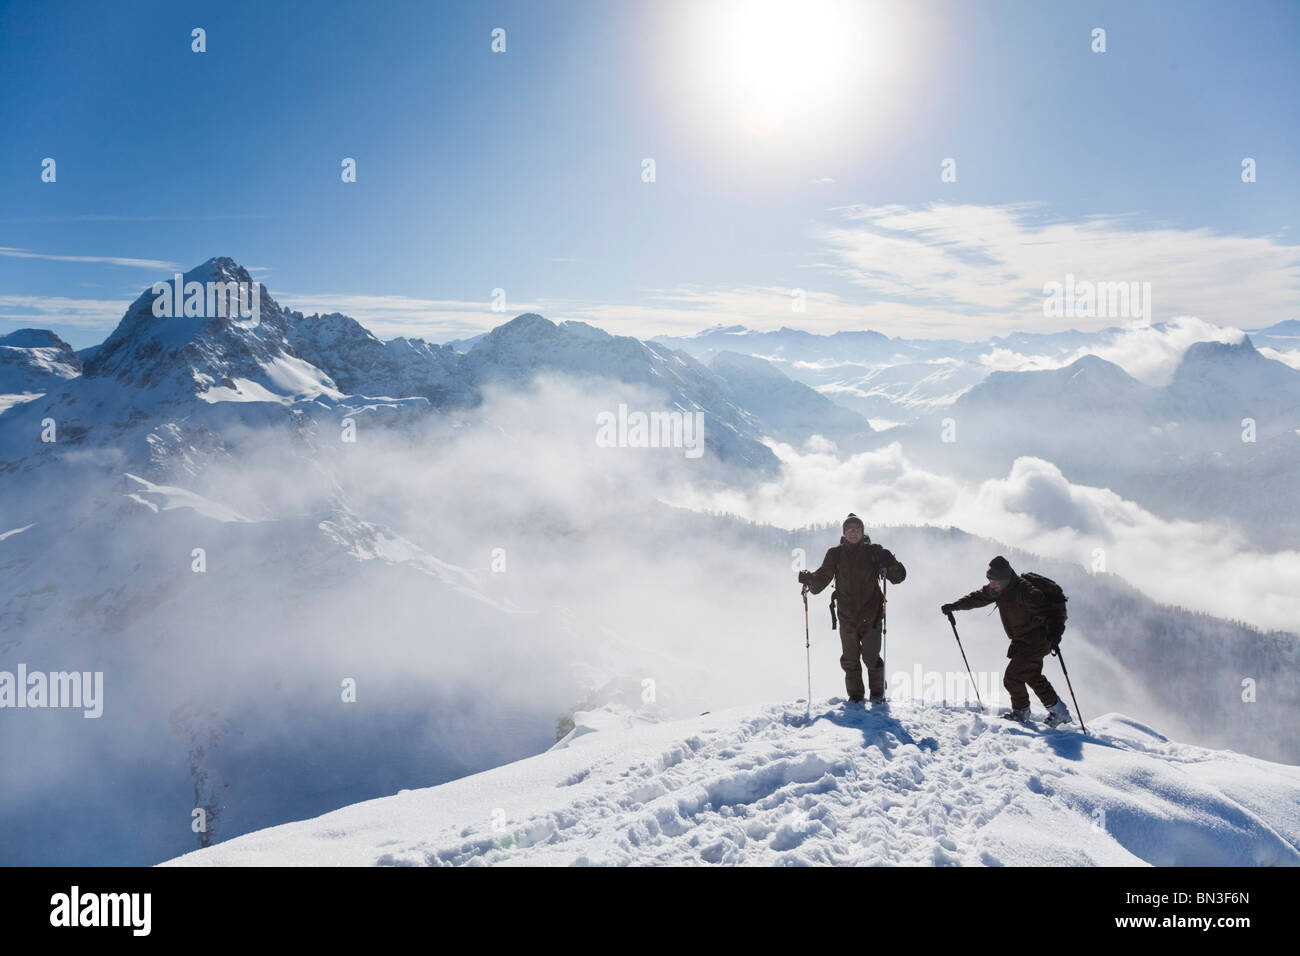 Two ski mountaineers on a mountain peak, Salzburger Land, Austria, elevated view Stock Photo